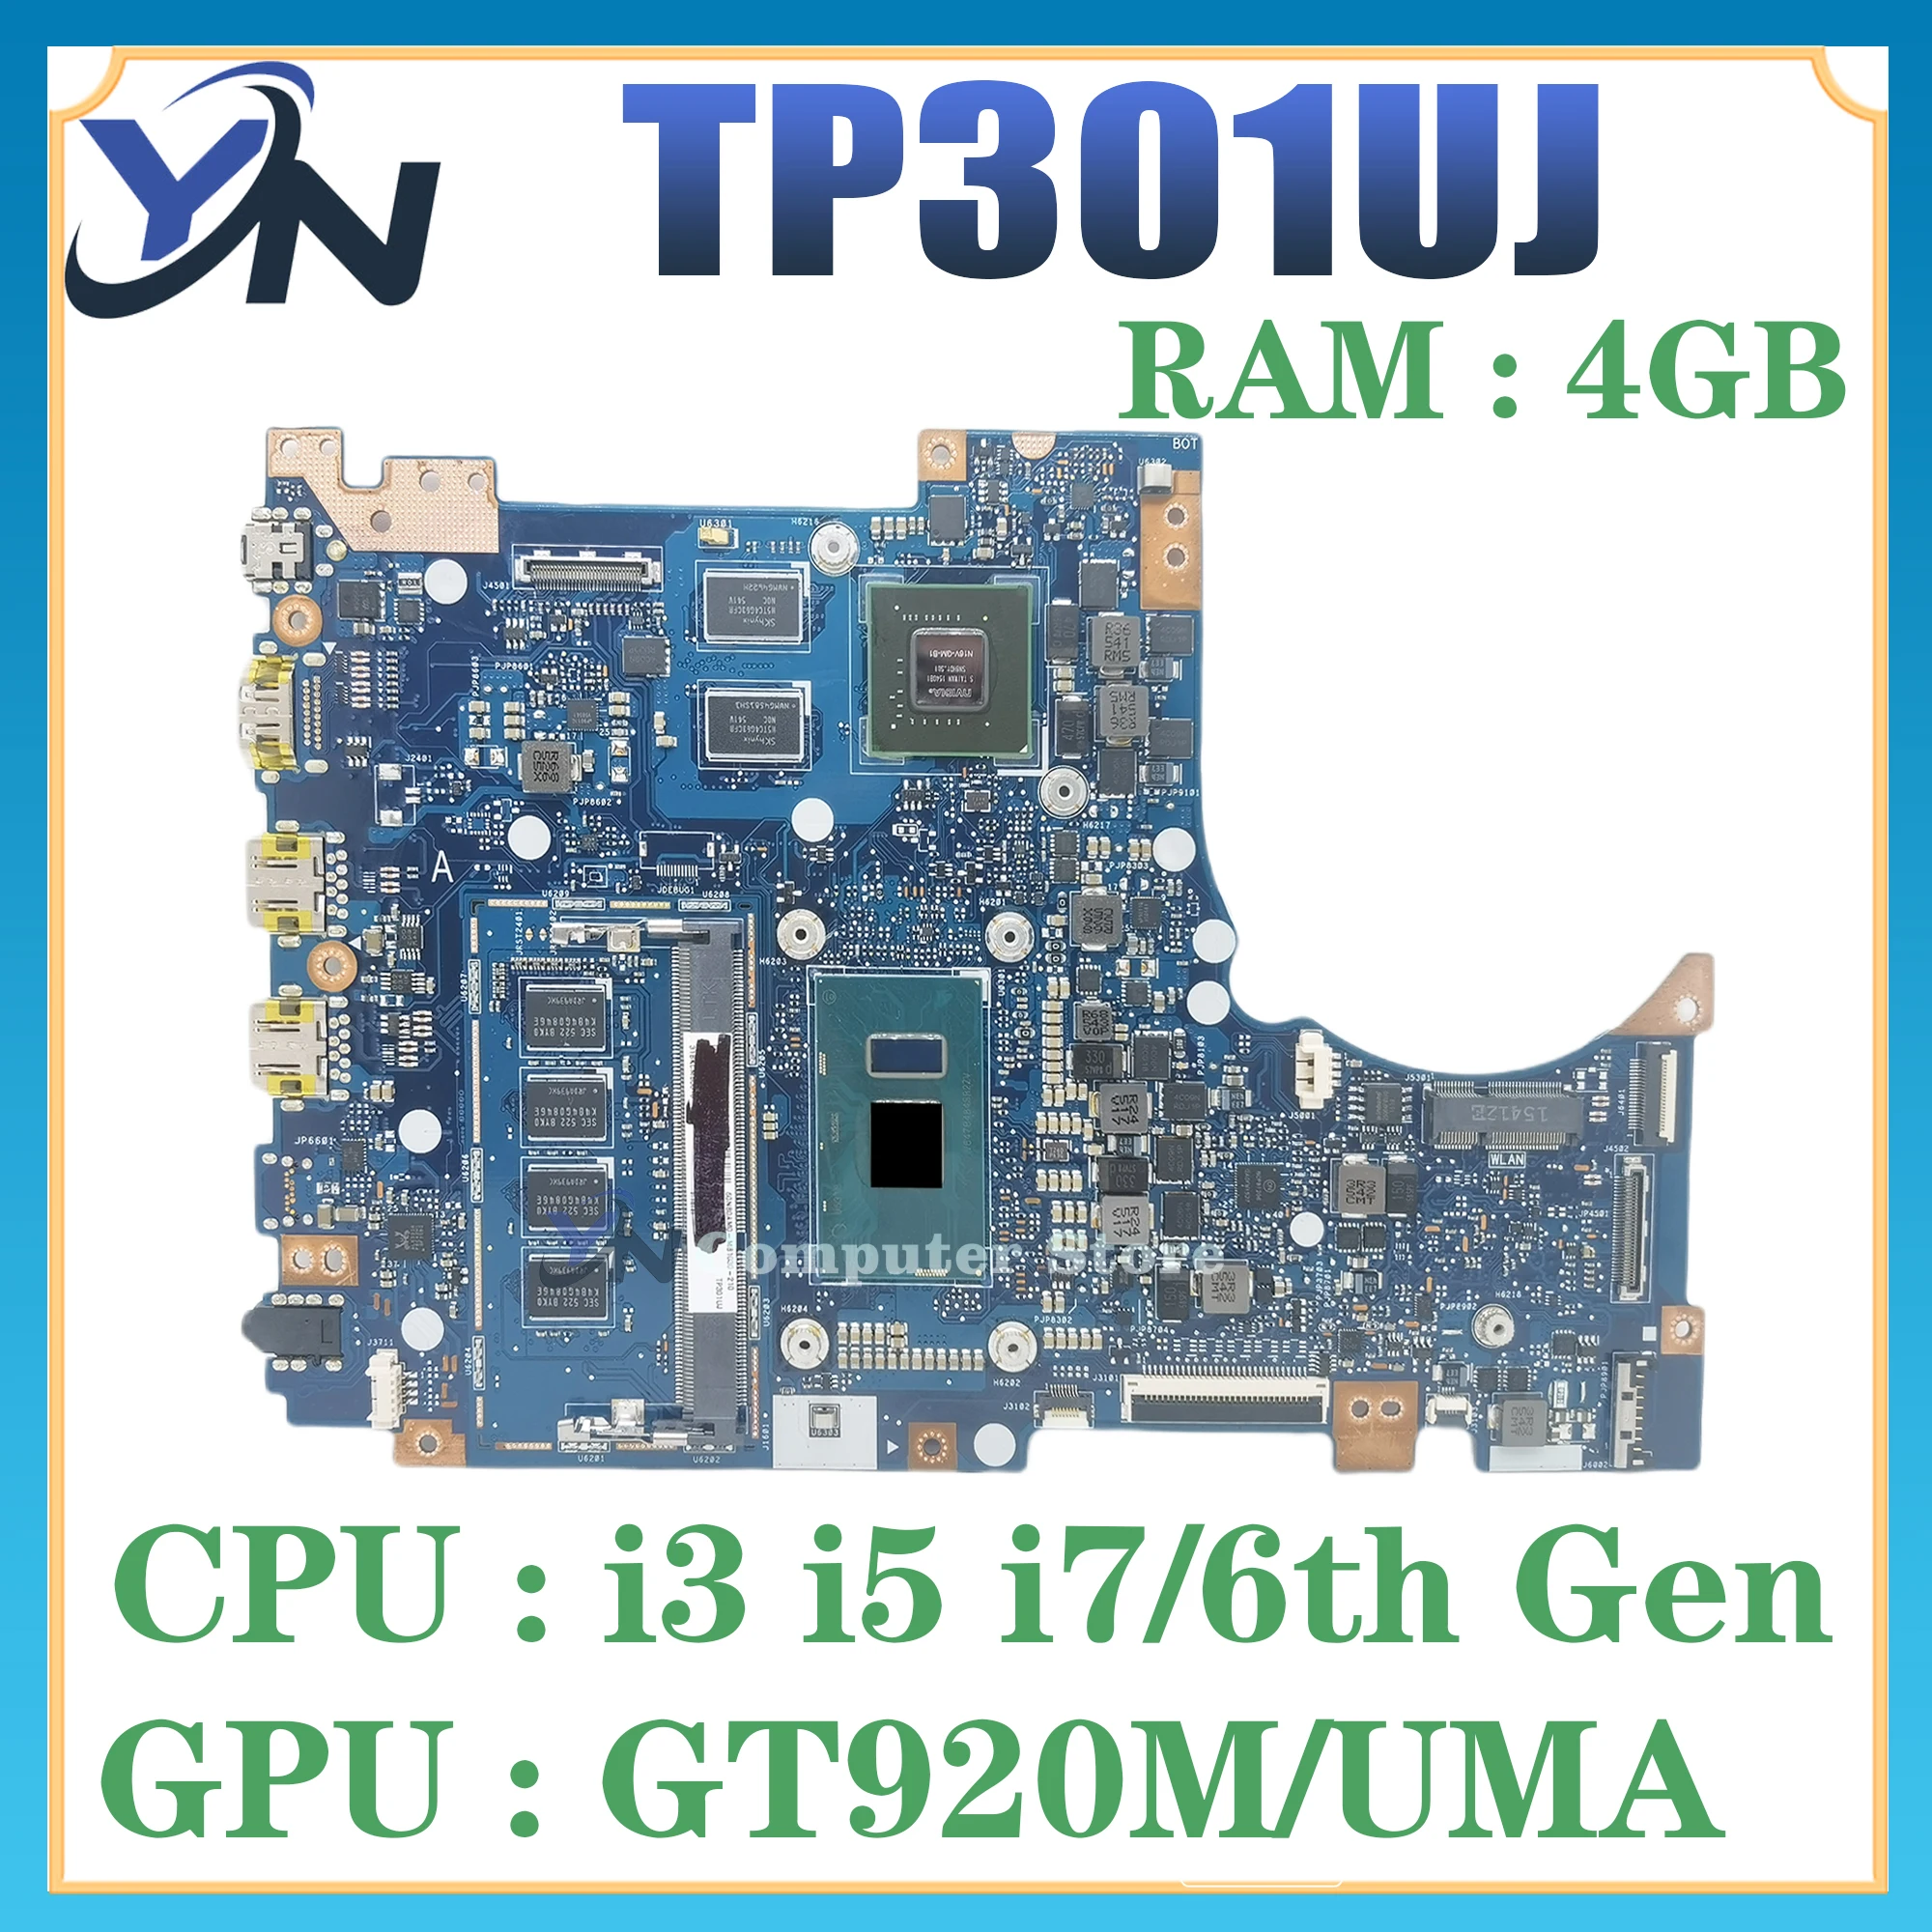 

TP301UJ Laptop Motherboard For ASUS TP301U TP301UA Q303U Mainboard I3 I5 I7-6TH GEN CPU 4G-RAM GT920/V2G Or UMA 100% Test OK